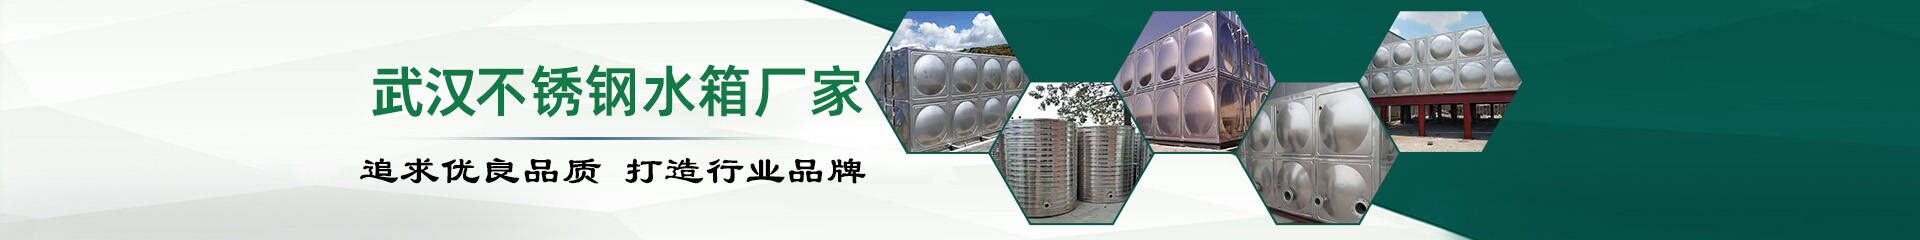 不锈钢保温水箱_武汉不锈钢水箱厂家联系方式